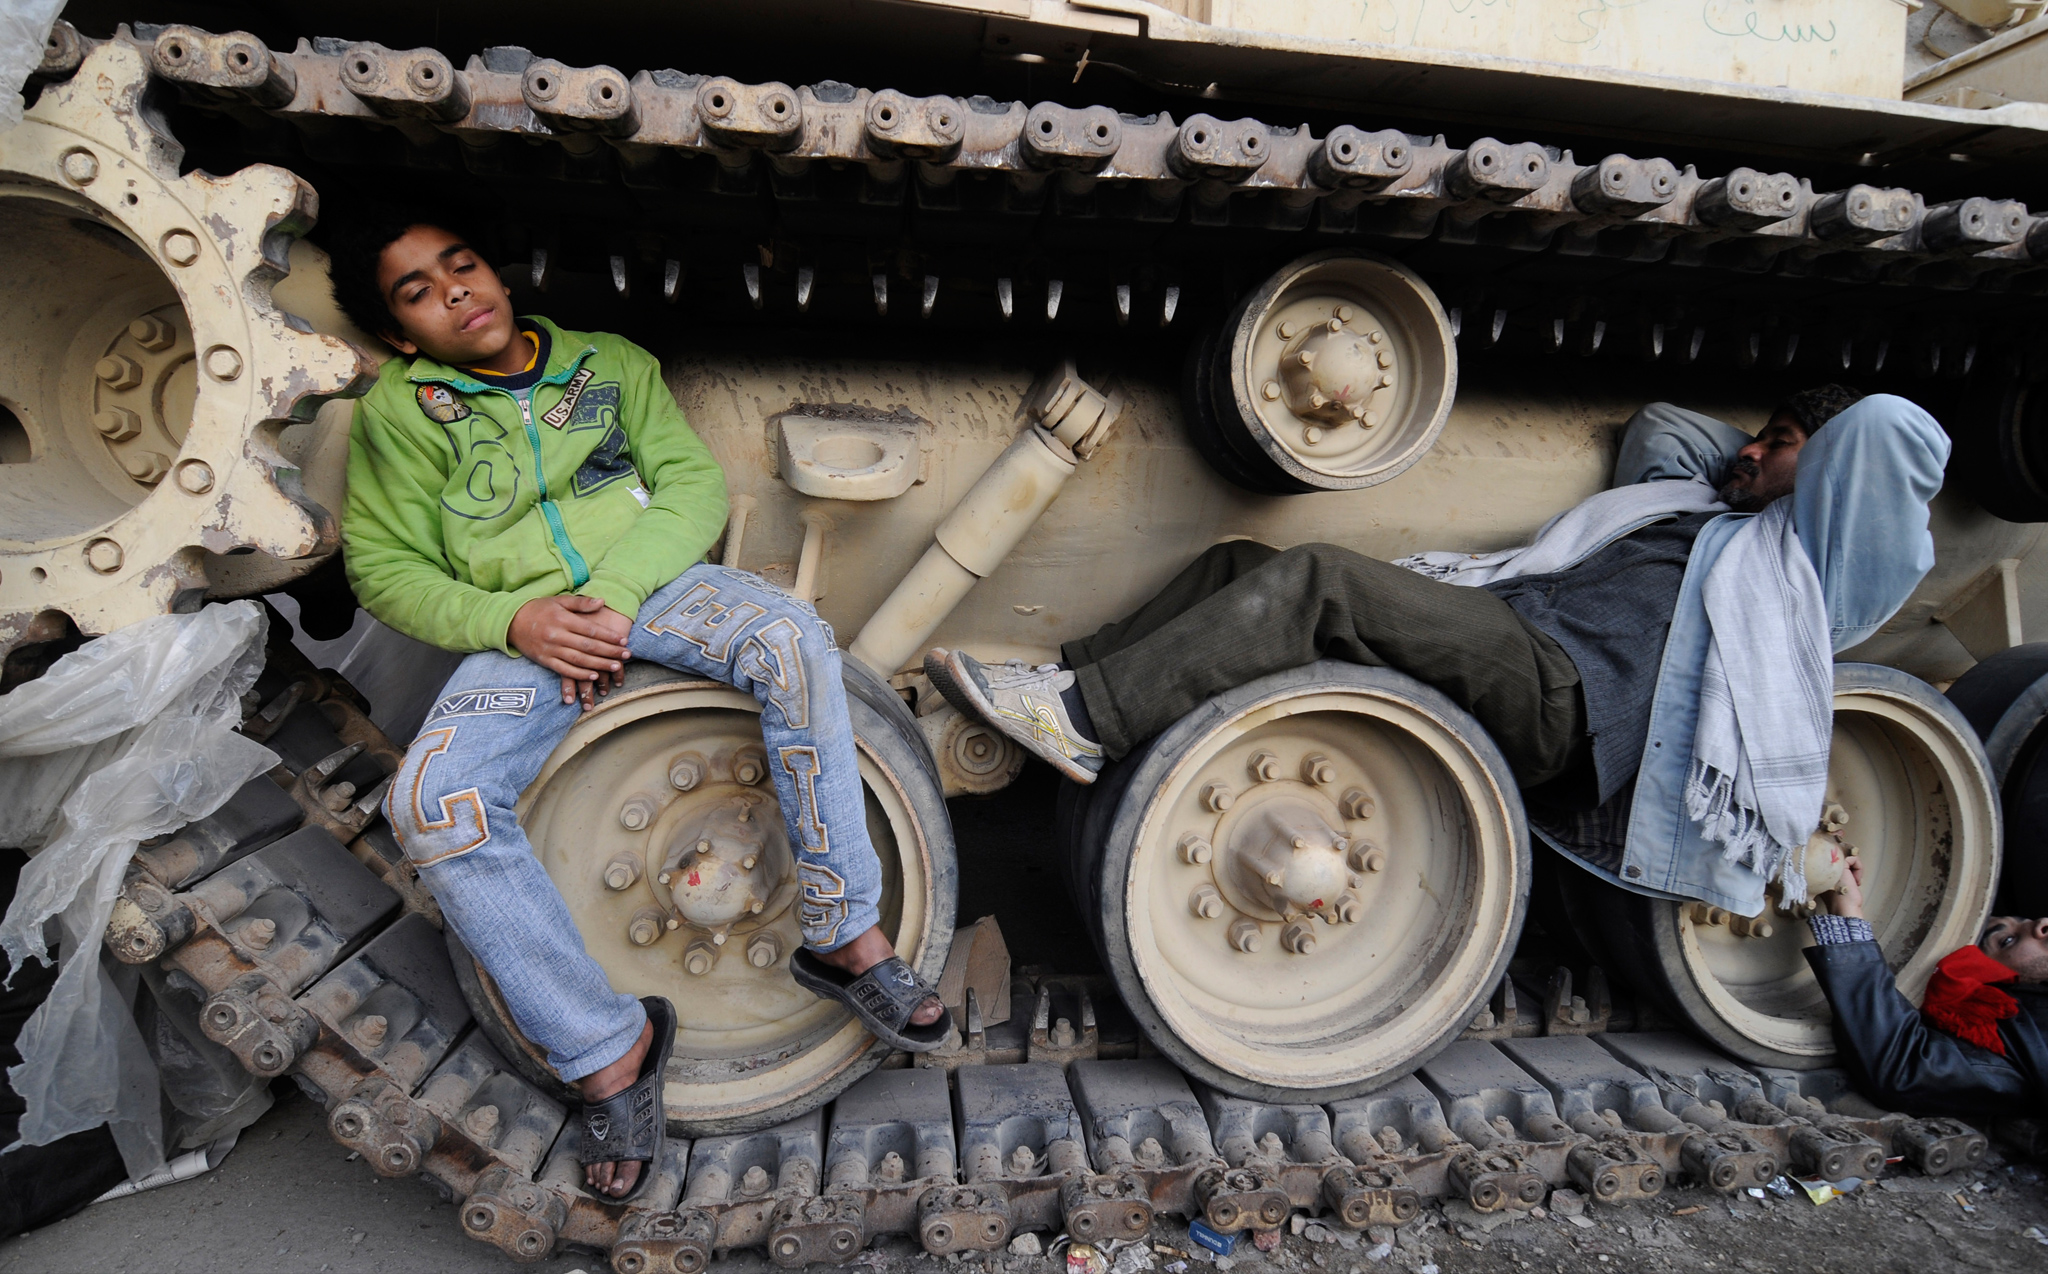 استراحة تحت الدبابات، اندمجت الآليات العسكرية في ديكور الثورة. <br>
(الصورة لمهدي الشبل)
